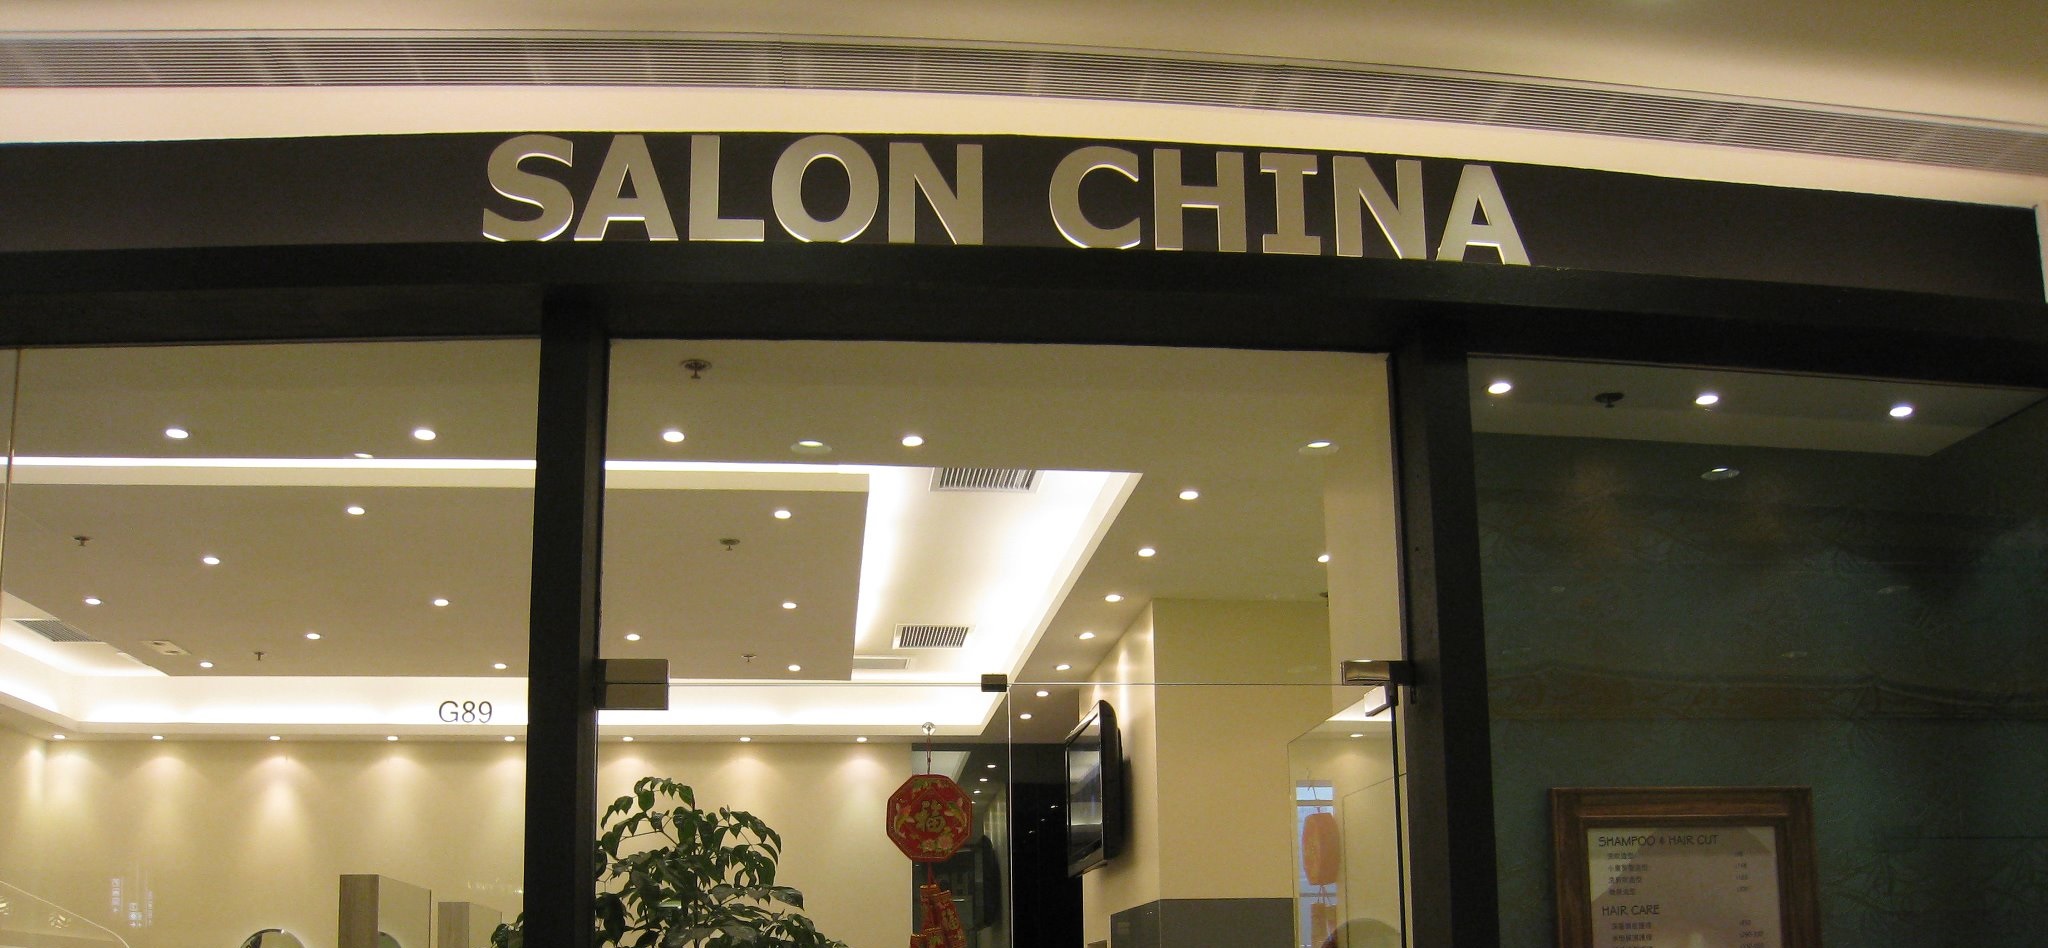 洗剪吹/洗吹造型: Salon China (沙田中心商場)